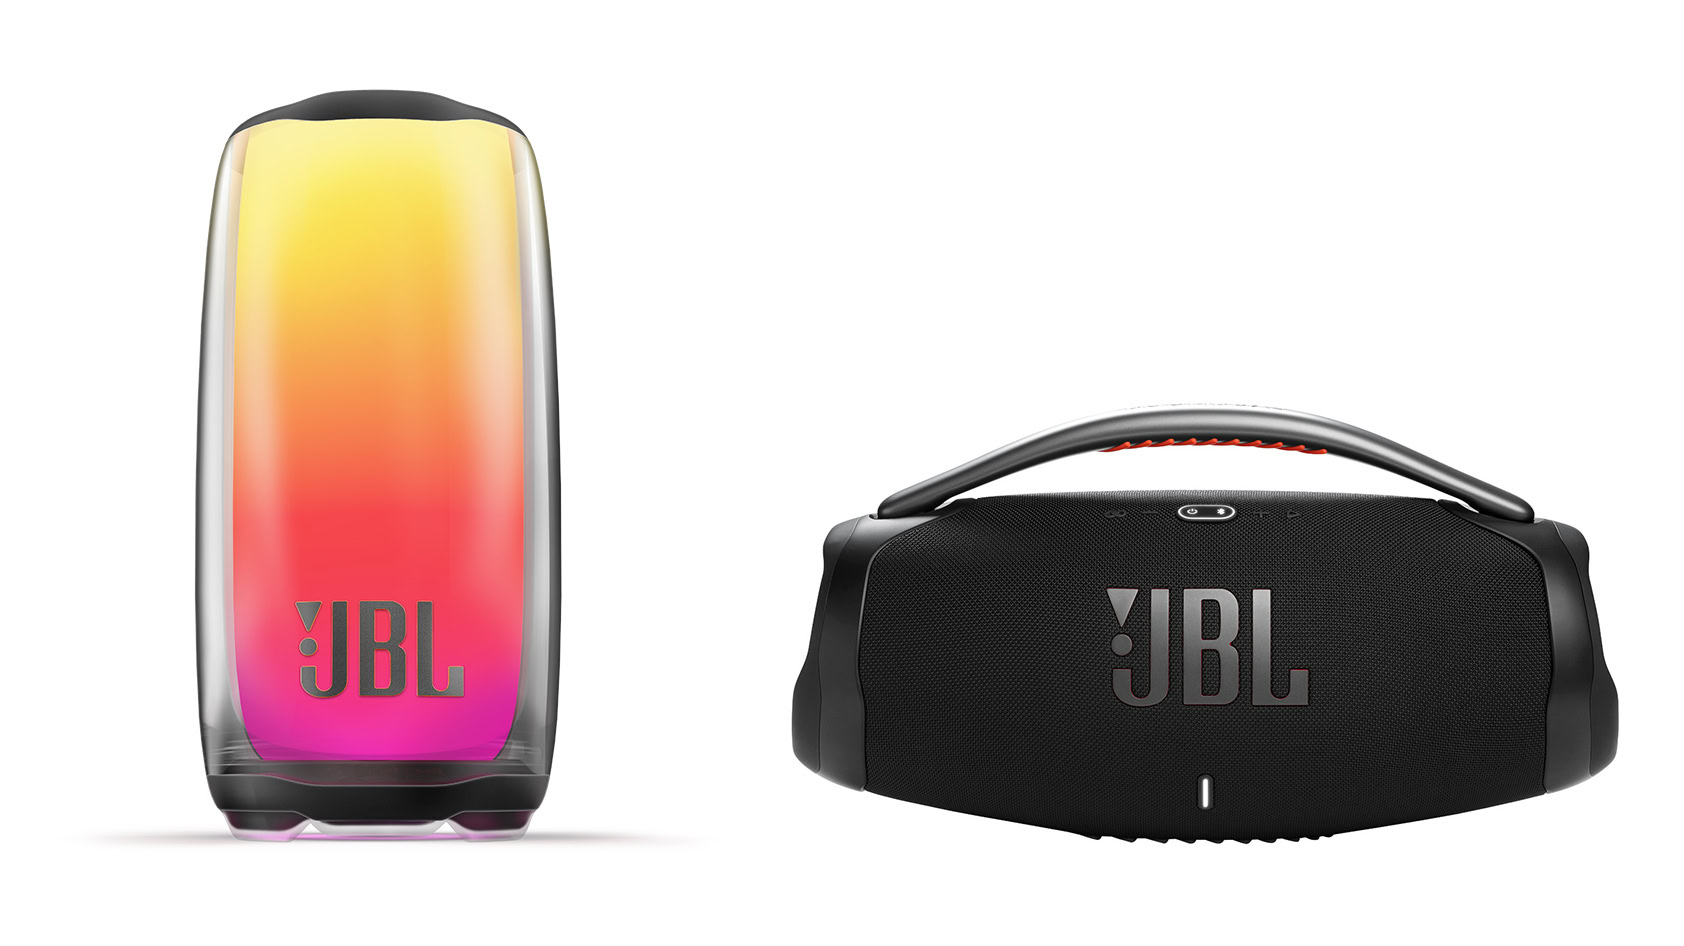 JBL Pulse 5 JBL Boombox 3 products